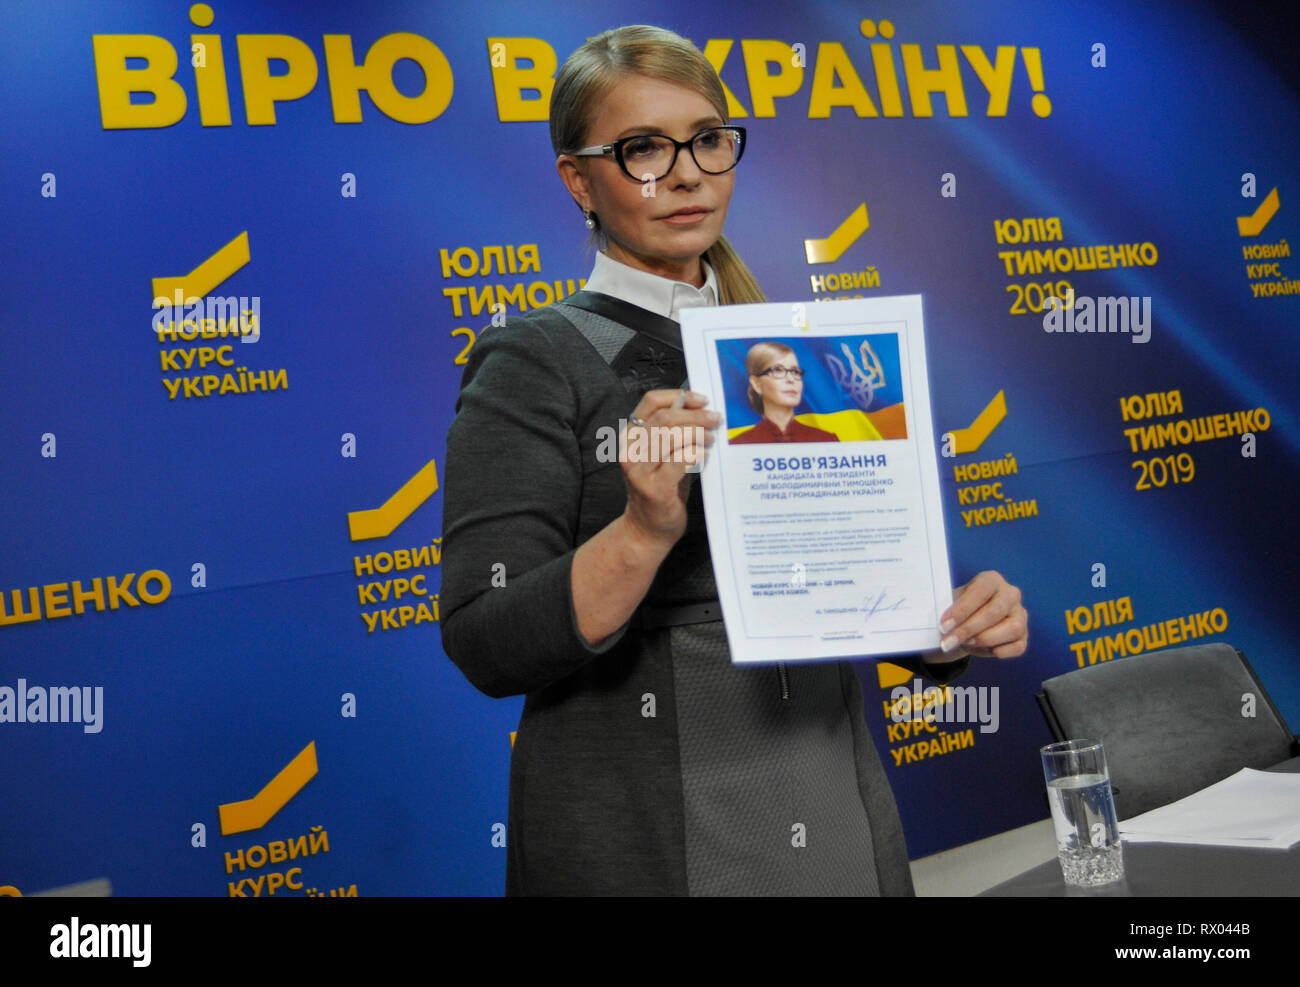 Leader dell'Ucraina partito politico visto durante una conferenza stampa. Ucraino candidato presidenziale Yulia Tymoshenko ha sottoscritto impegni per gli elettori dell'Ucraina. Foto Stock